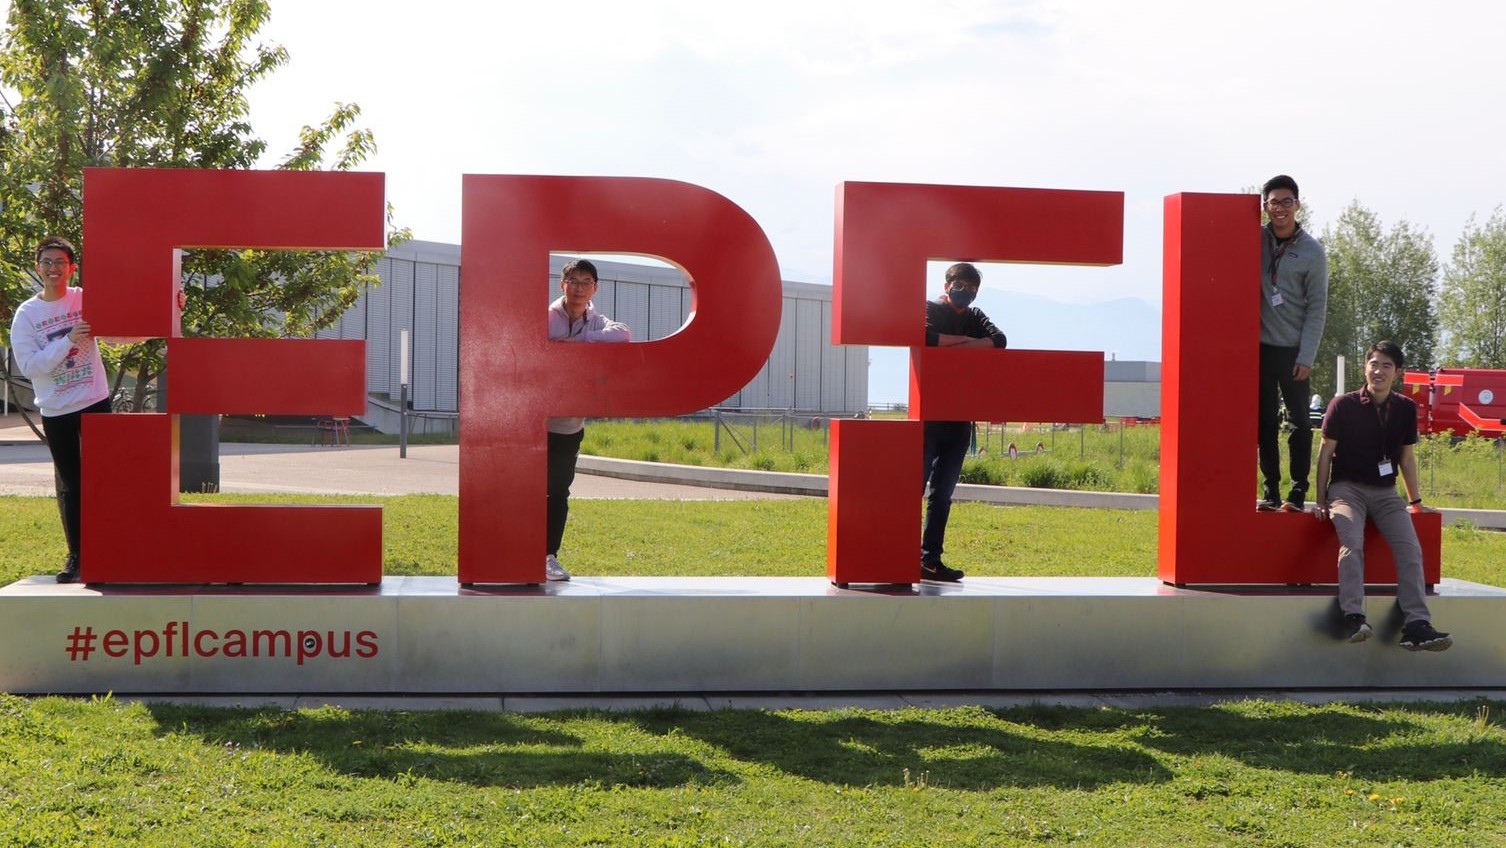 2022 ‒ International ‐ EPFL